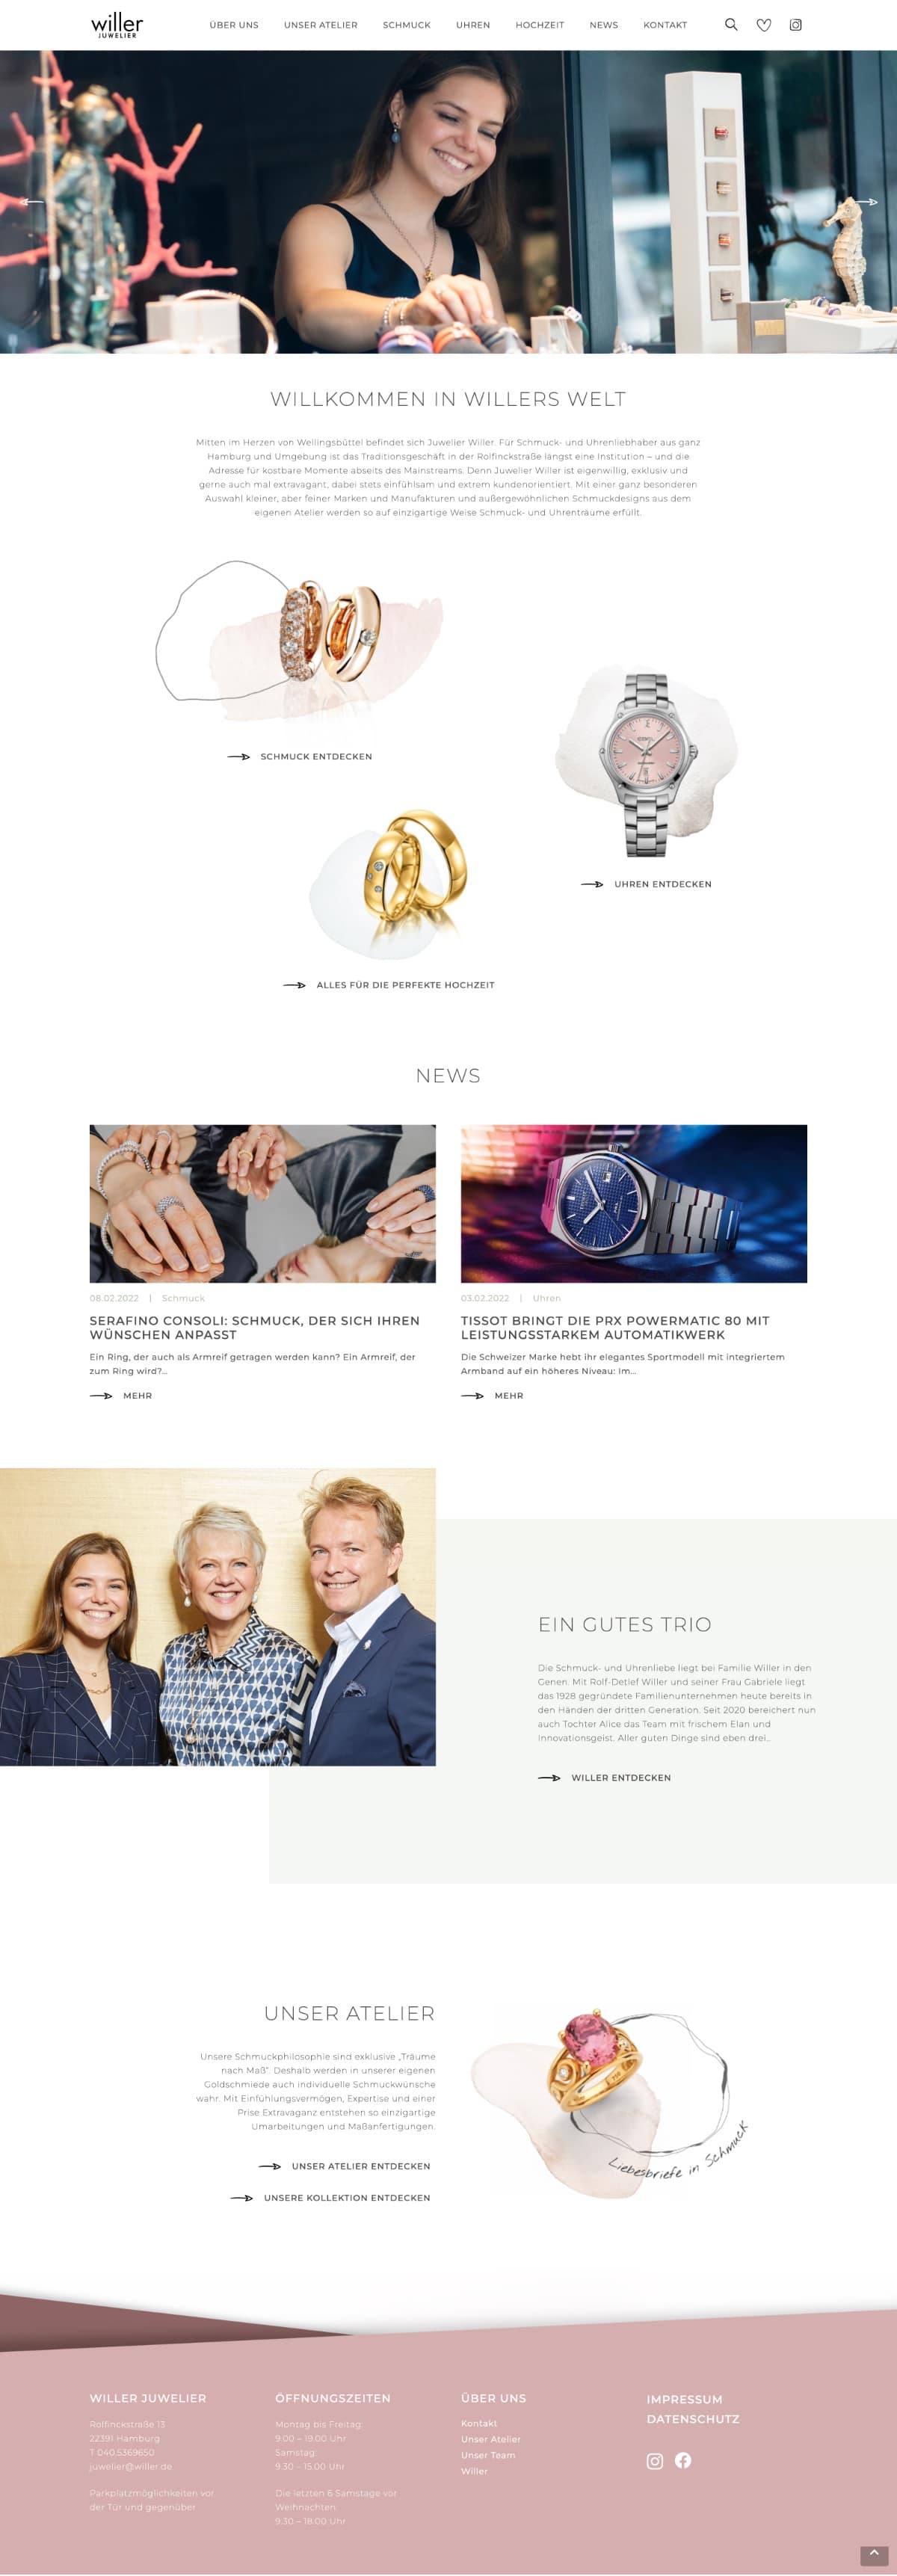 Juwelier-Willer - Website